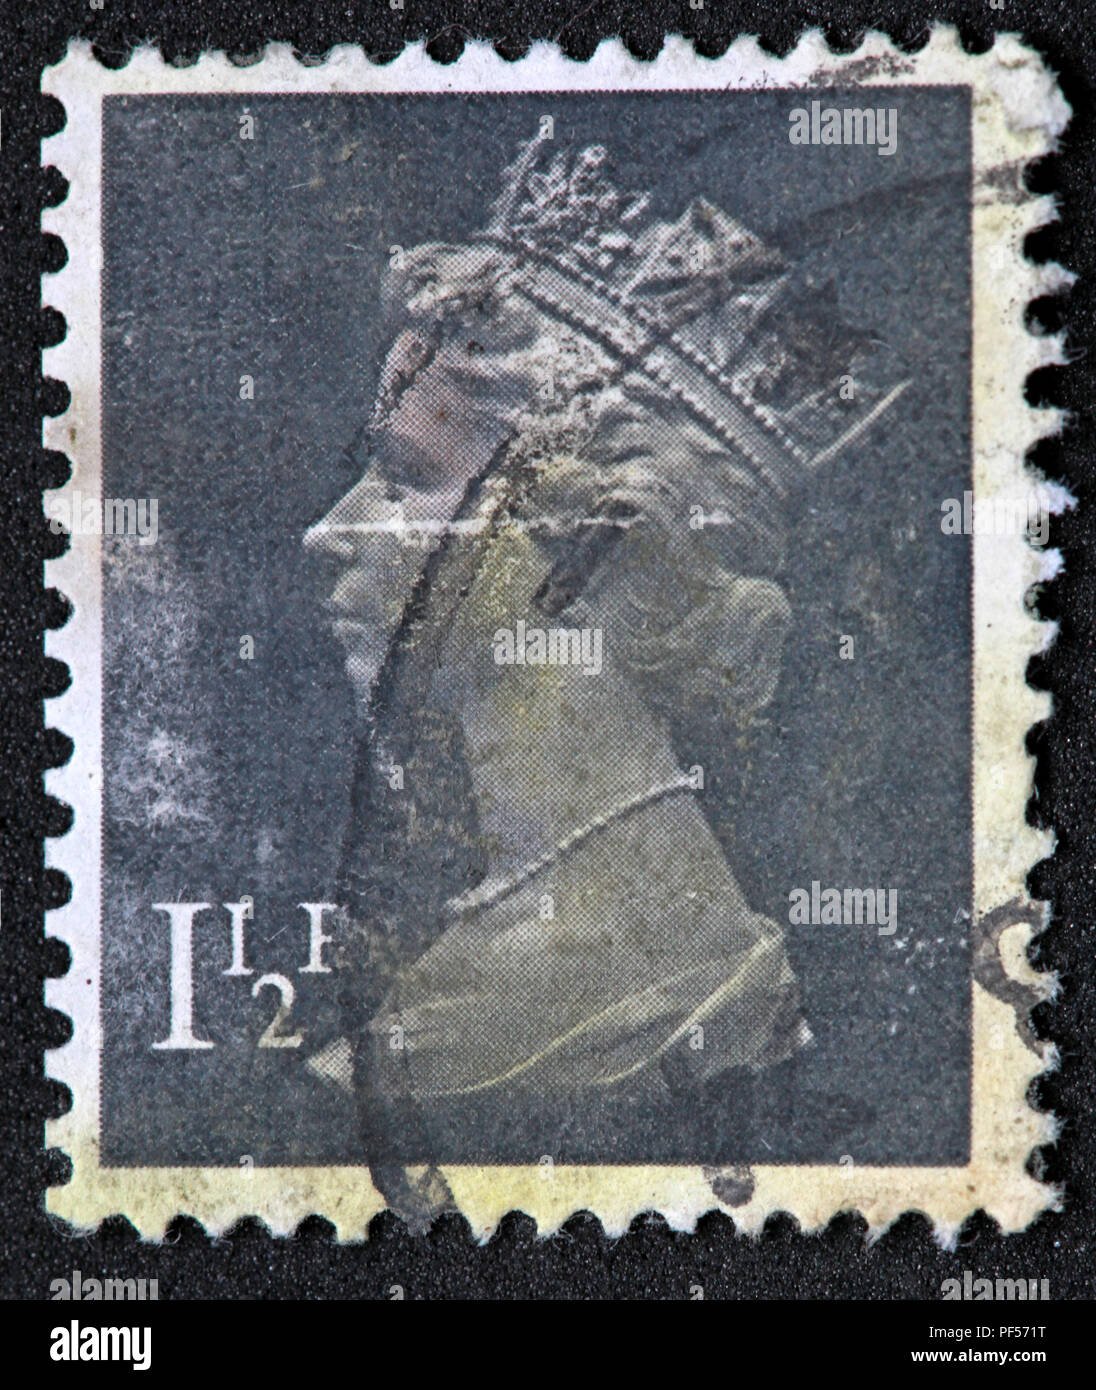 Utilisé la franchise UK stamp - 1.5p - La reine Elizabeth II Banque D'Images